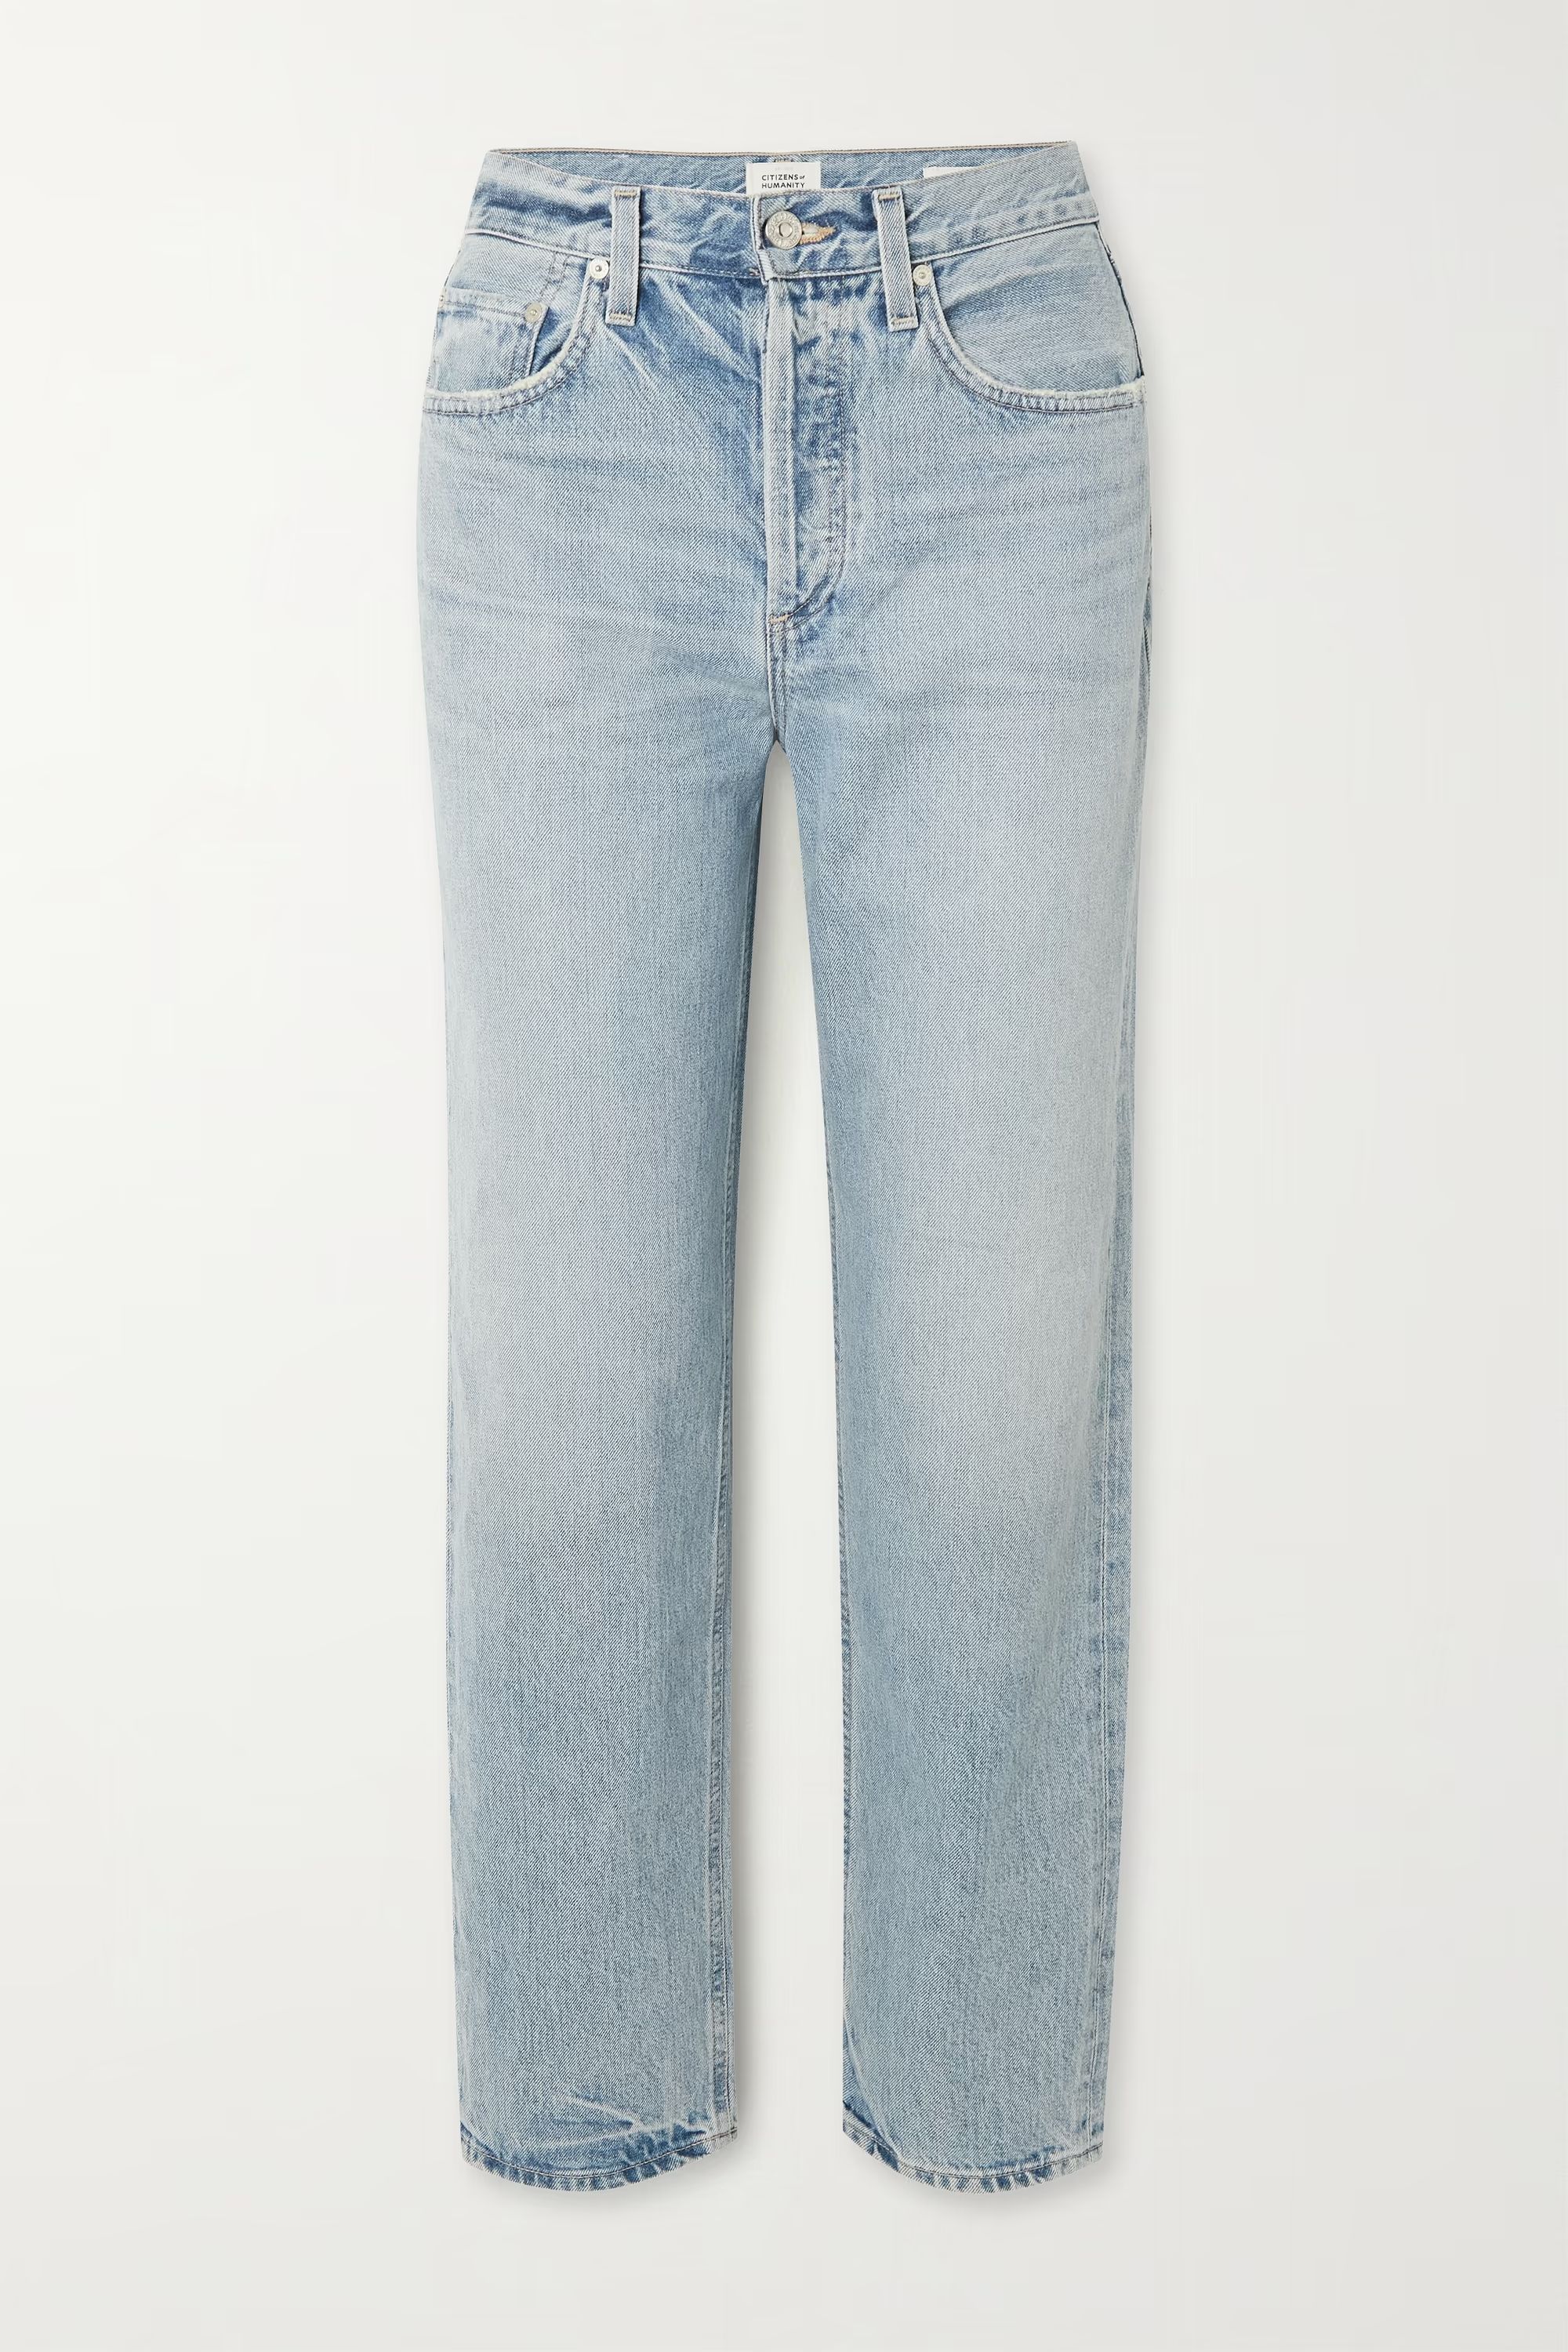 + NET SUSTAIN Devi slim-leg organic jeans | NET-A-PORTER (US)